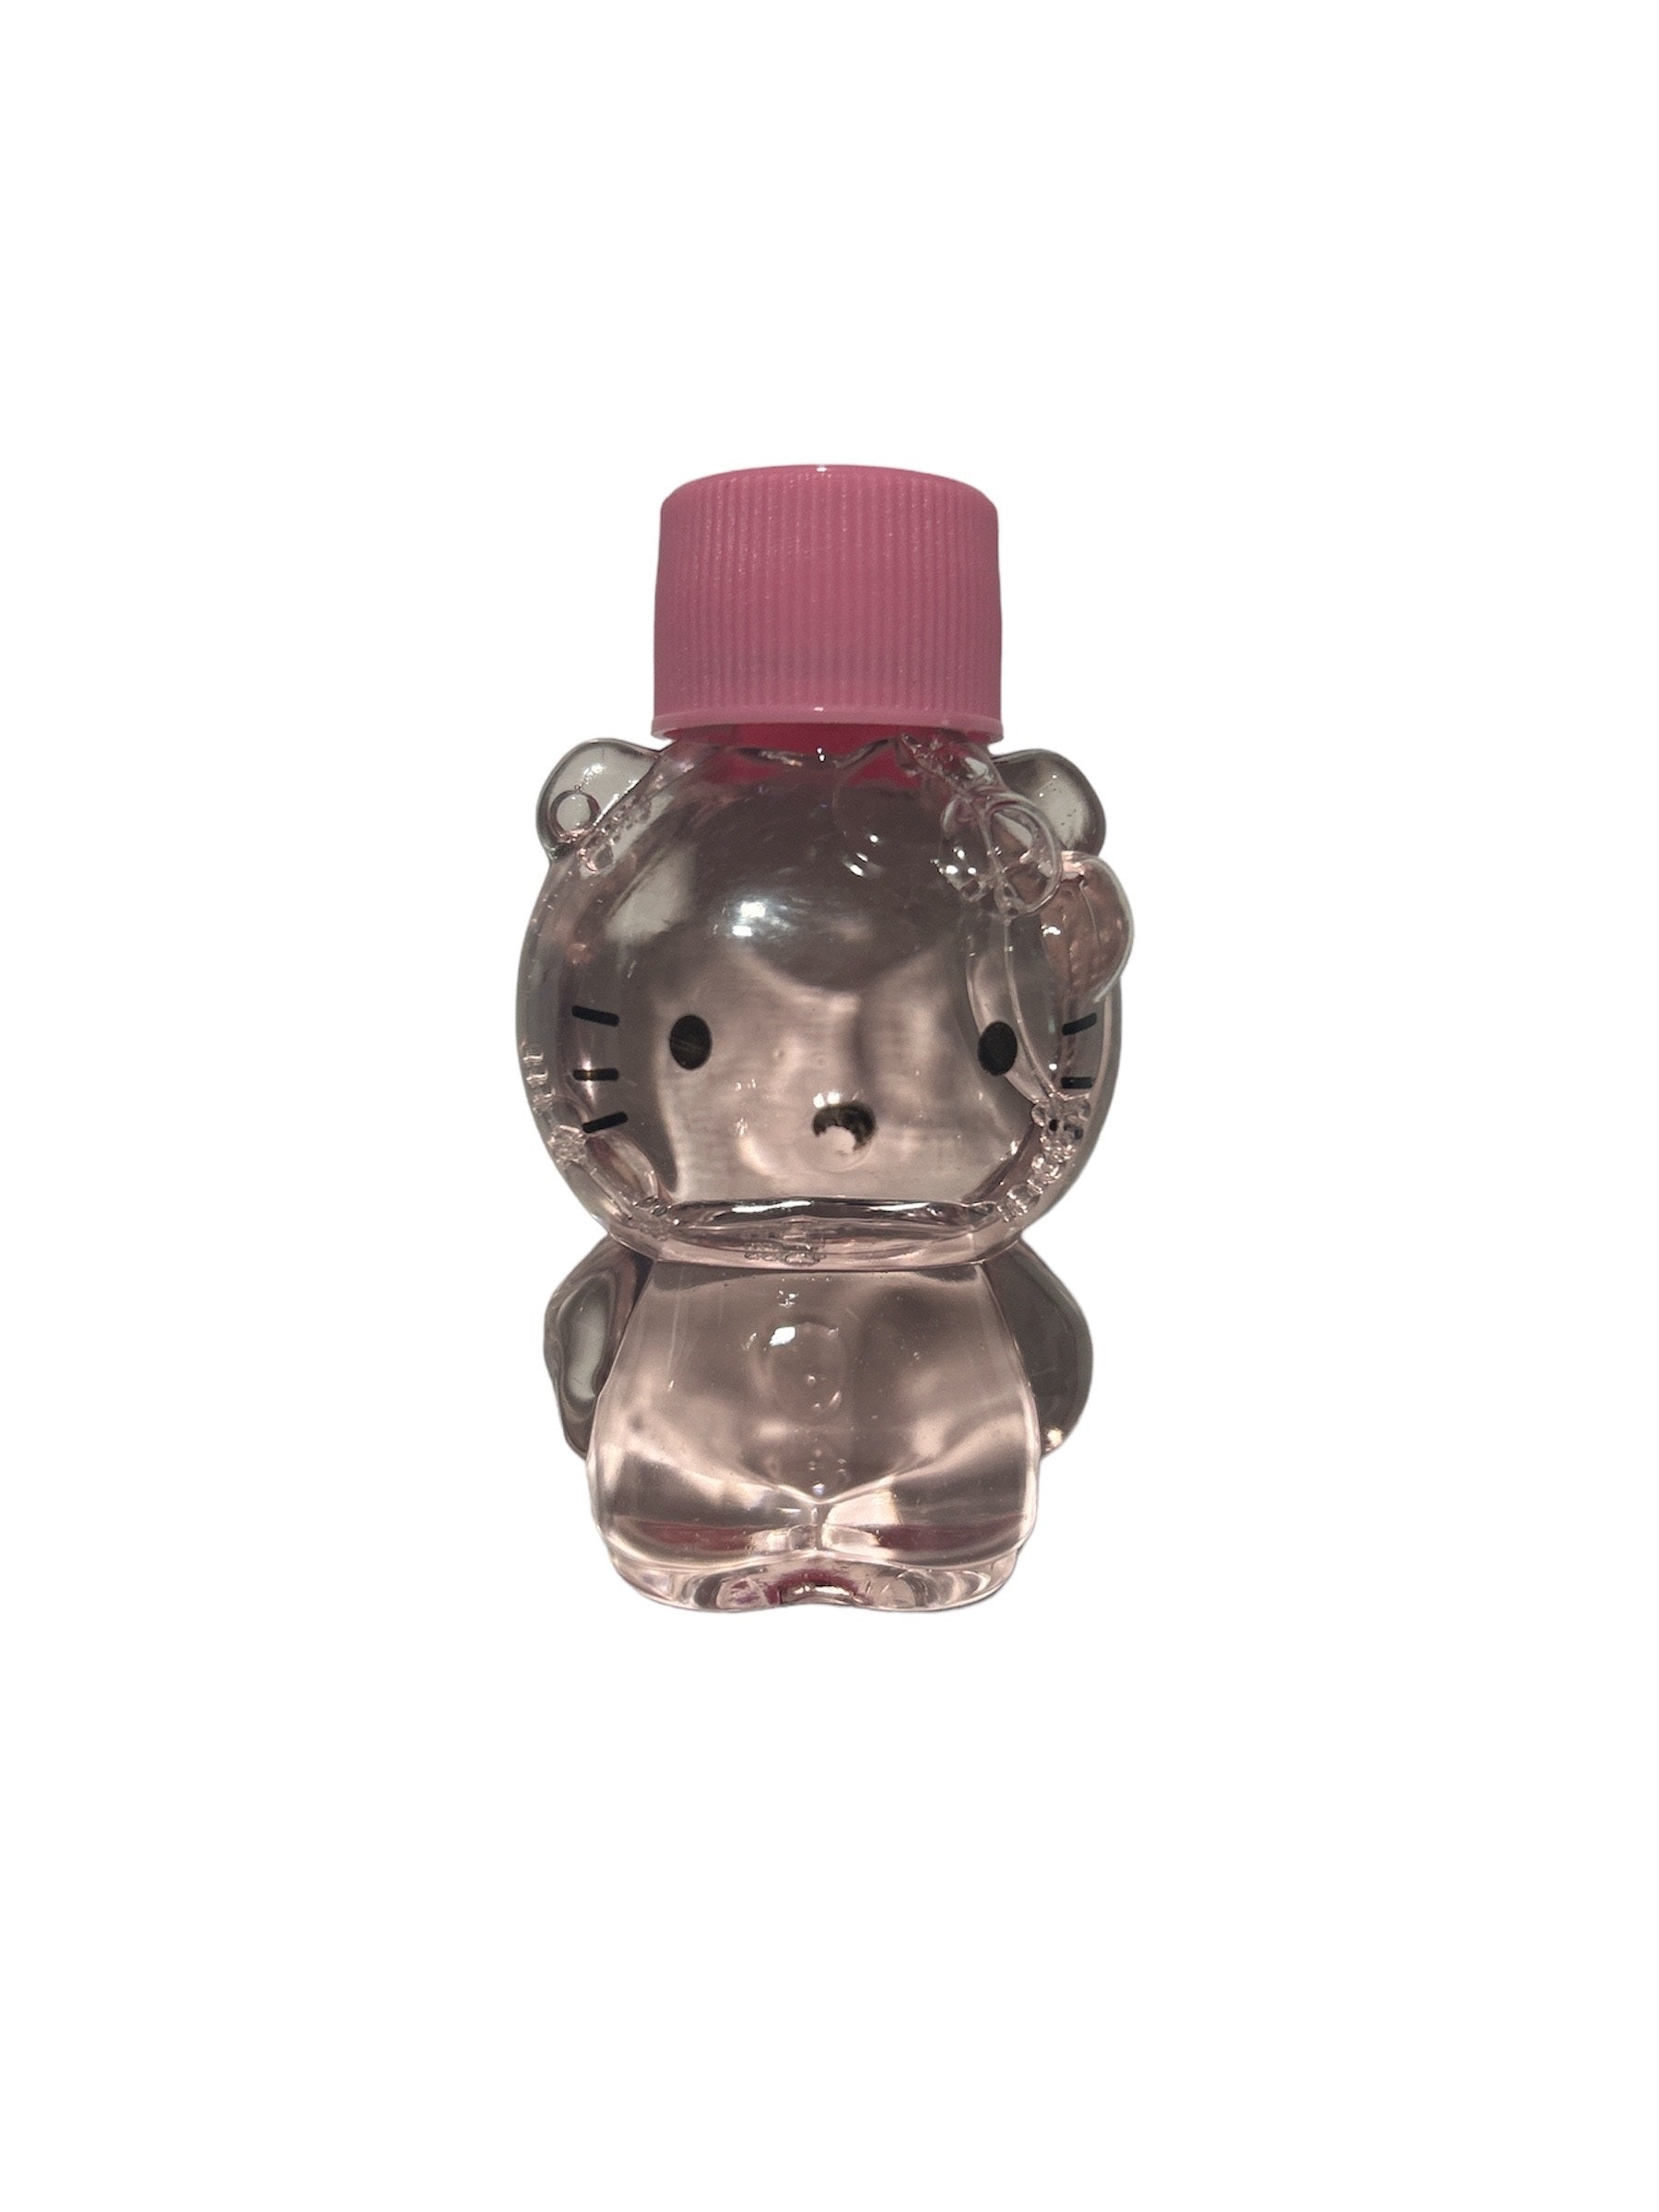 M'lundo x Hello Kitty Makeup Remover Liquid w/Decorative Bottle